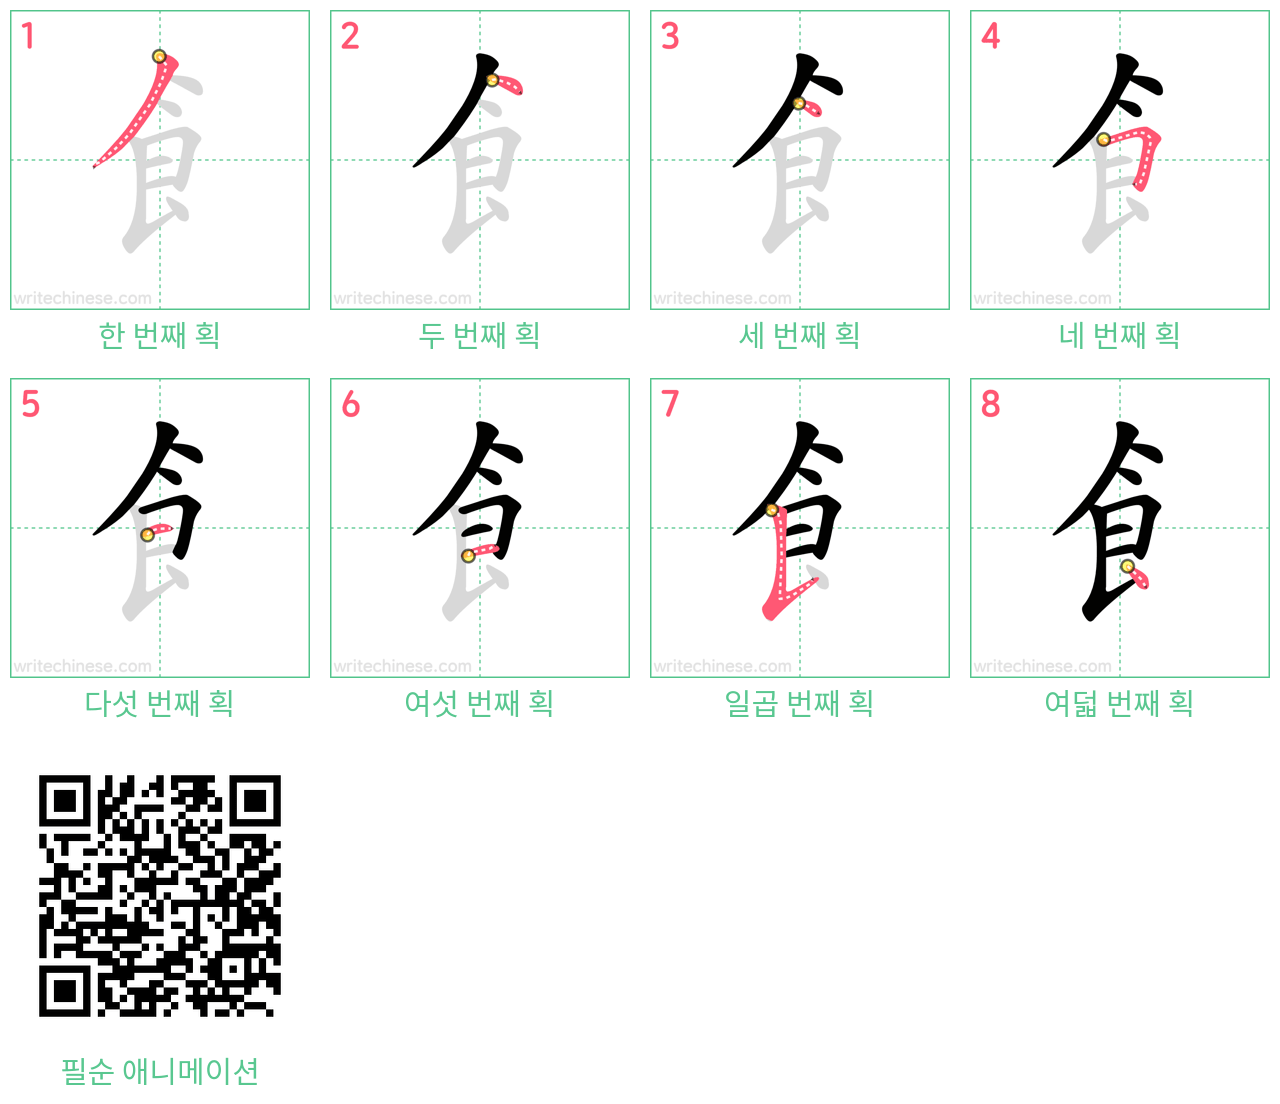 飠 step-by-step stroke order diagrams